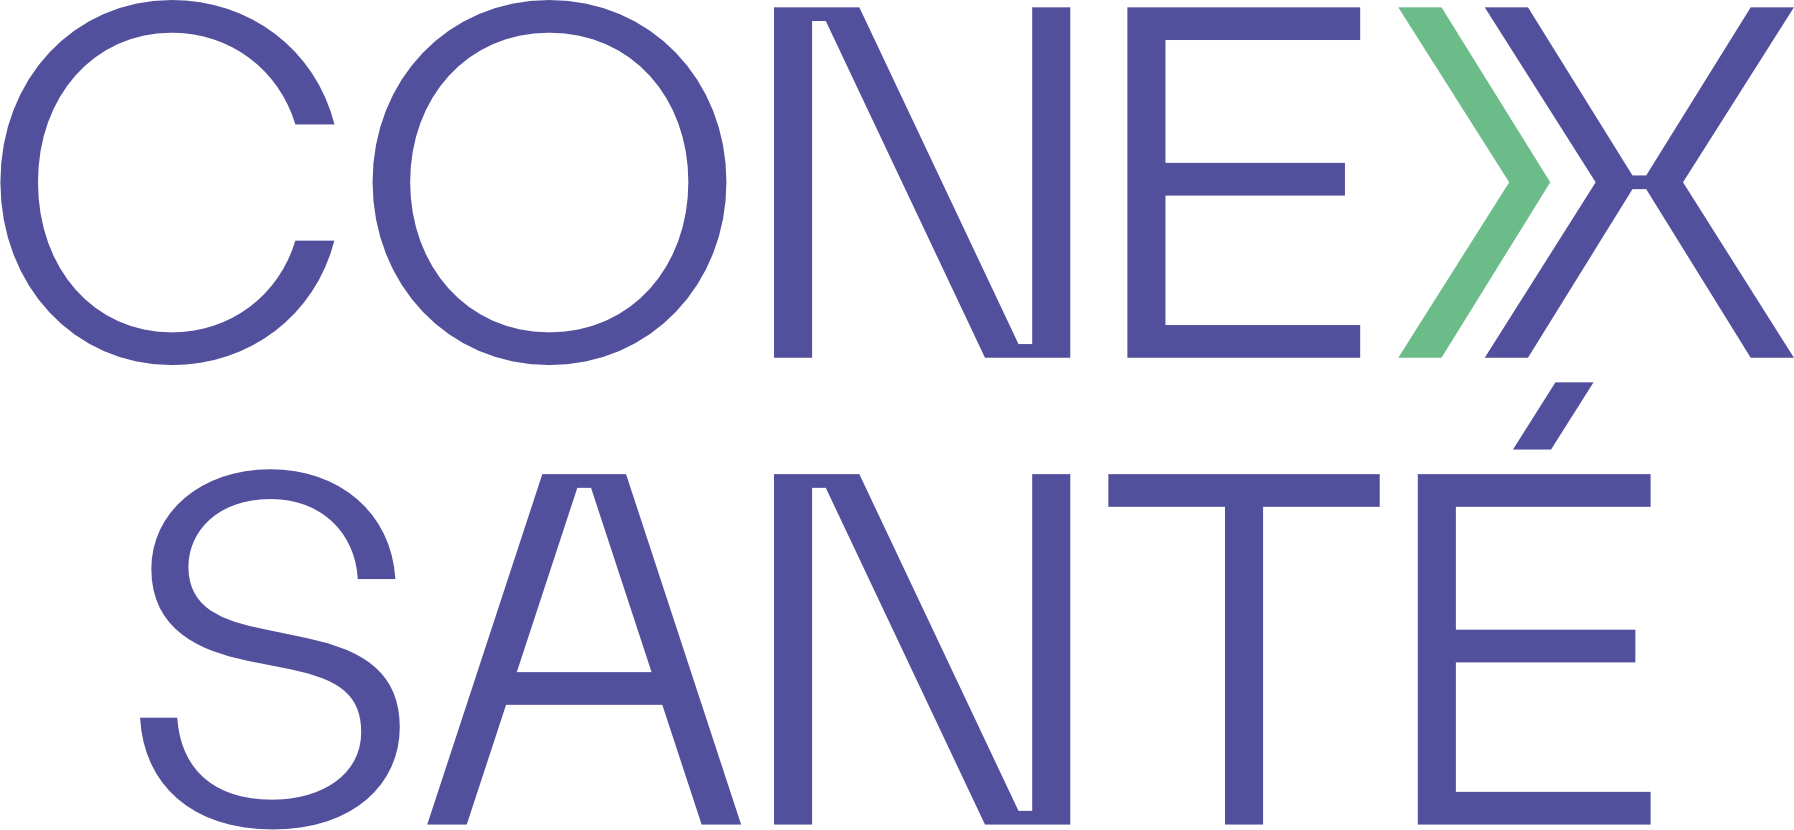 Logo exposant CONEX SANTE